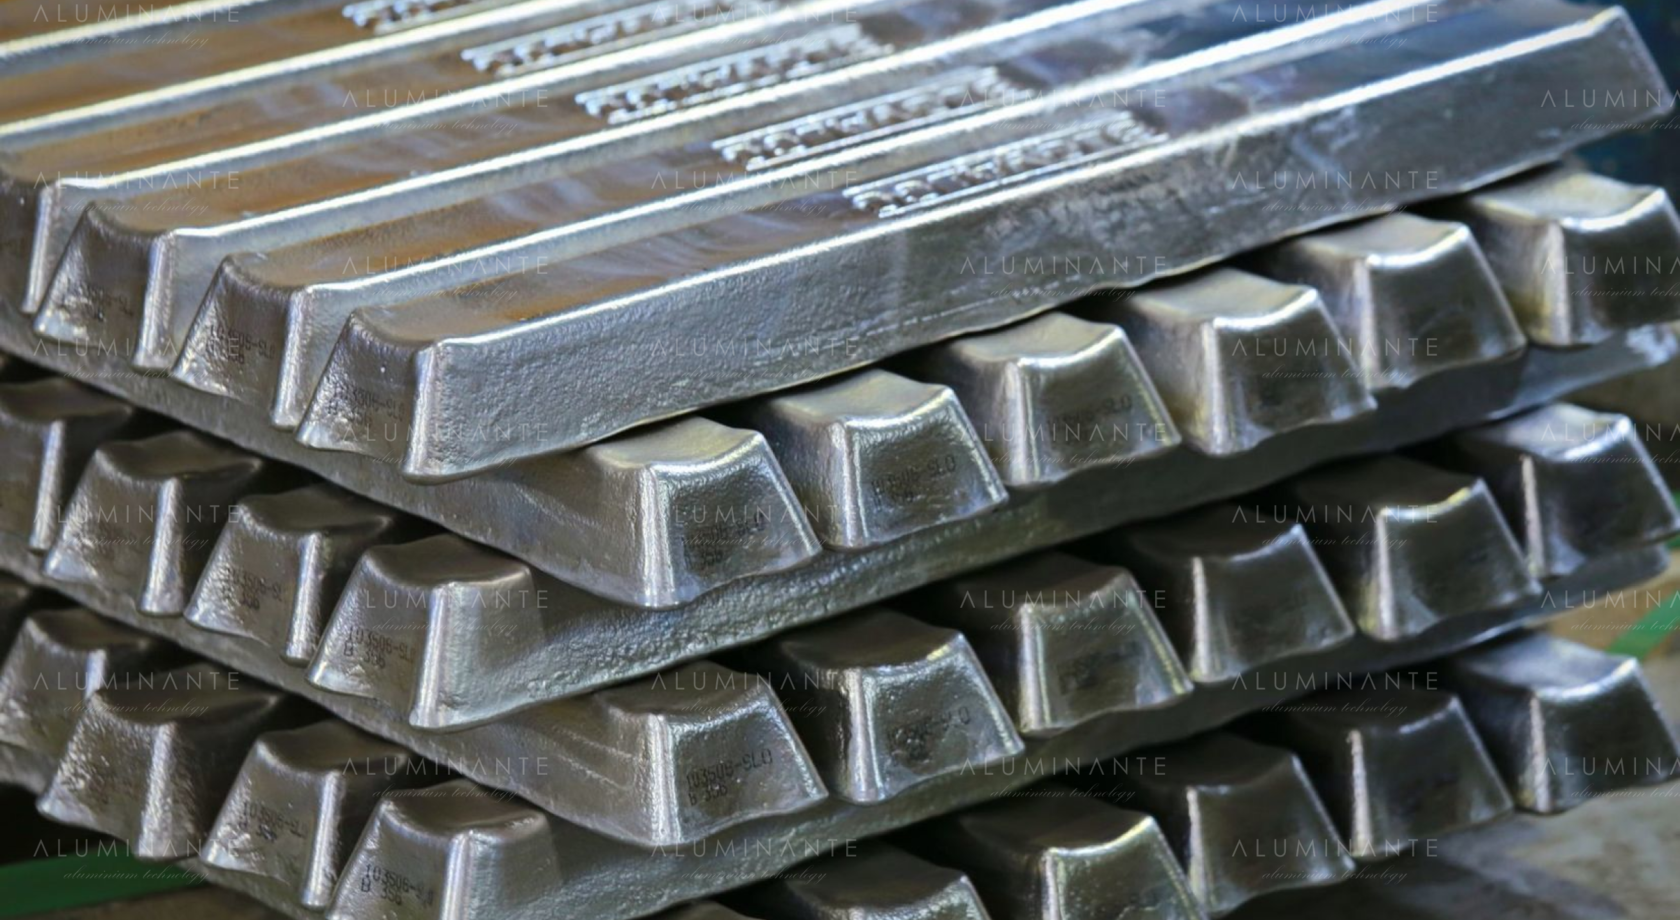 Использование первичного алюминия высокого качества в создании алюминиевых изделий имеет ключевое значение для достижения высоких стандартов производства.